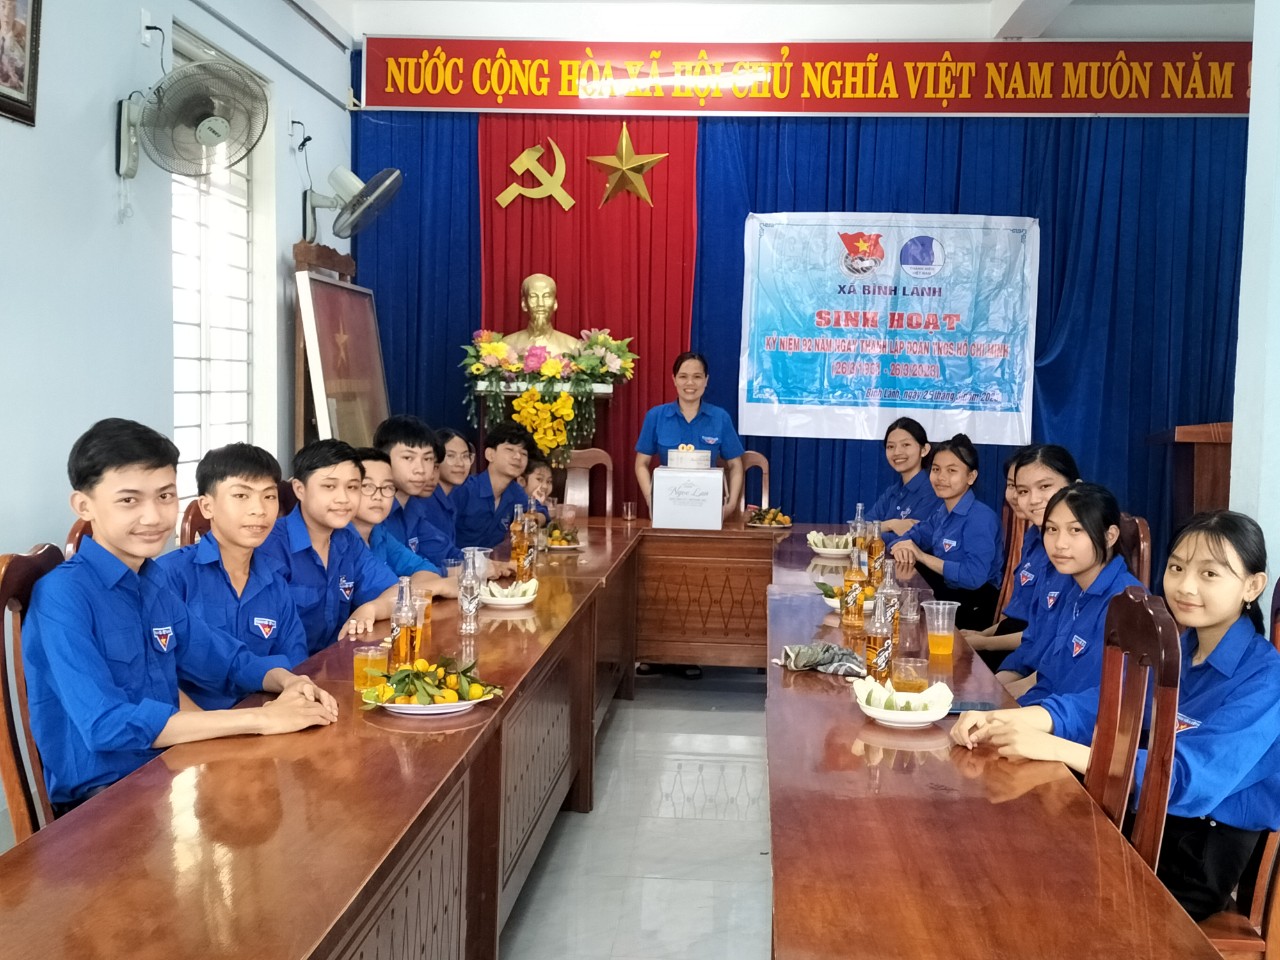 Đoàn xã Bình Lãnh tổ chức sinh hoạt kỉ niệm 92 năm ngày thành lập Đoàn TNCS Hồ Chí Minh (26/3/1931 - 26/3/2023)